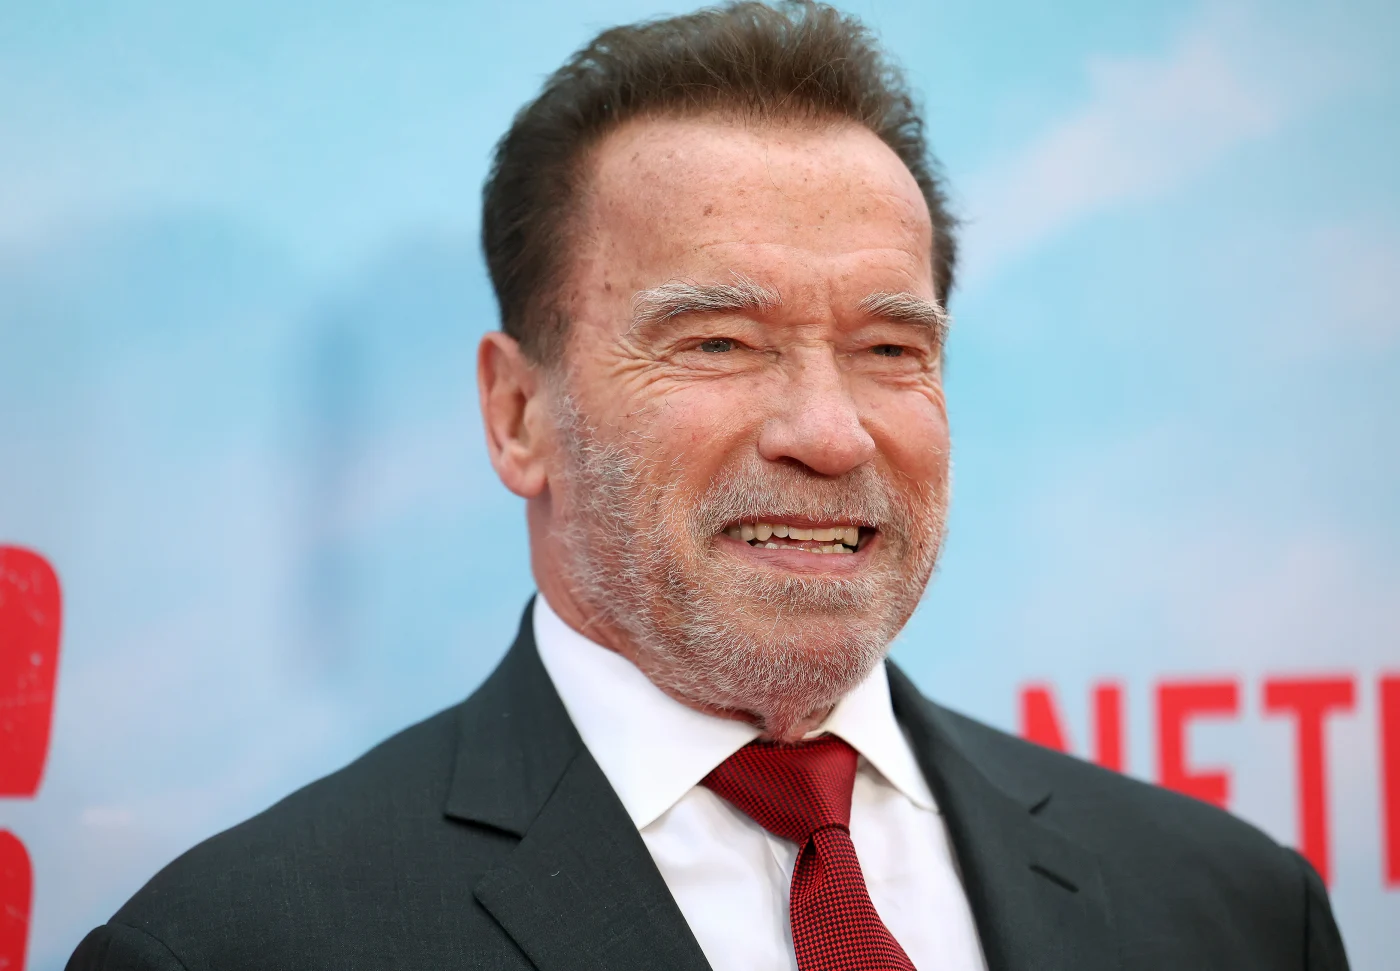 Arnold Alois Schwarzenegger Face Sticker